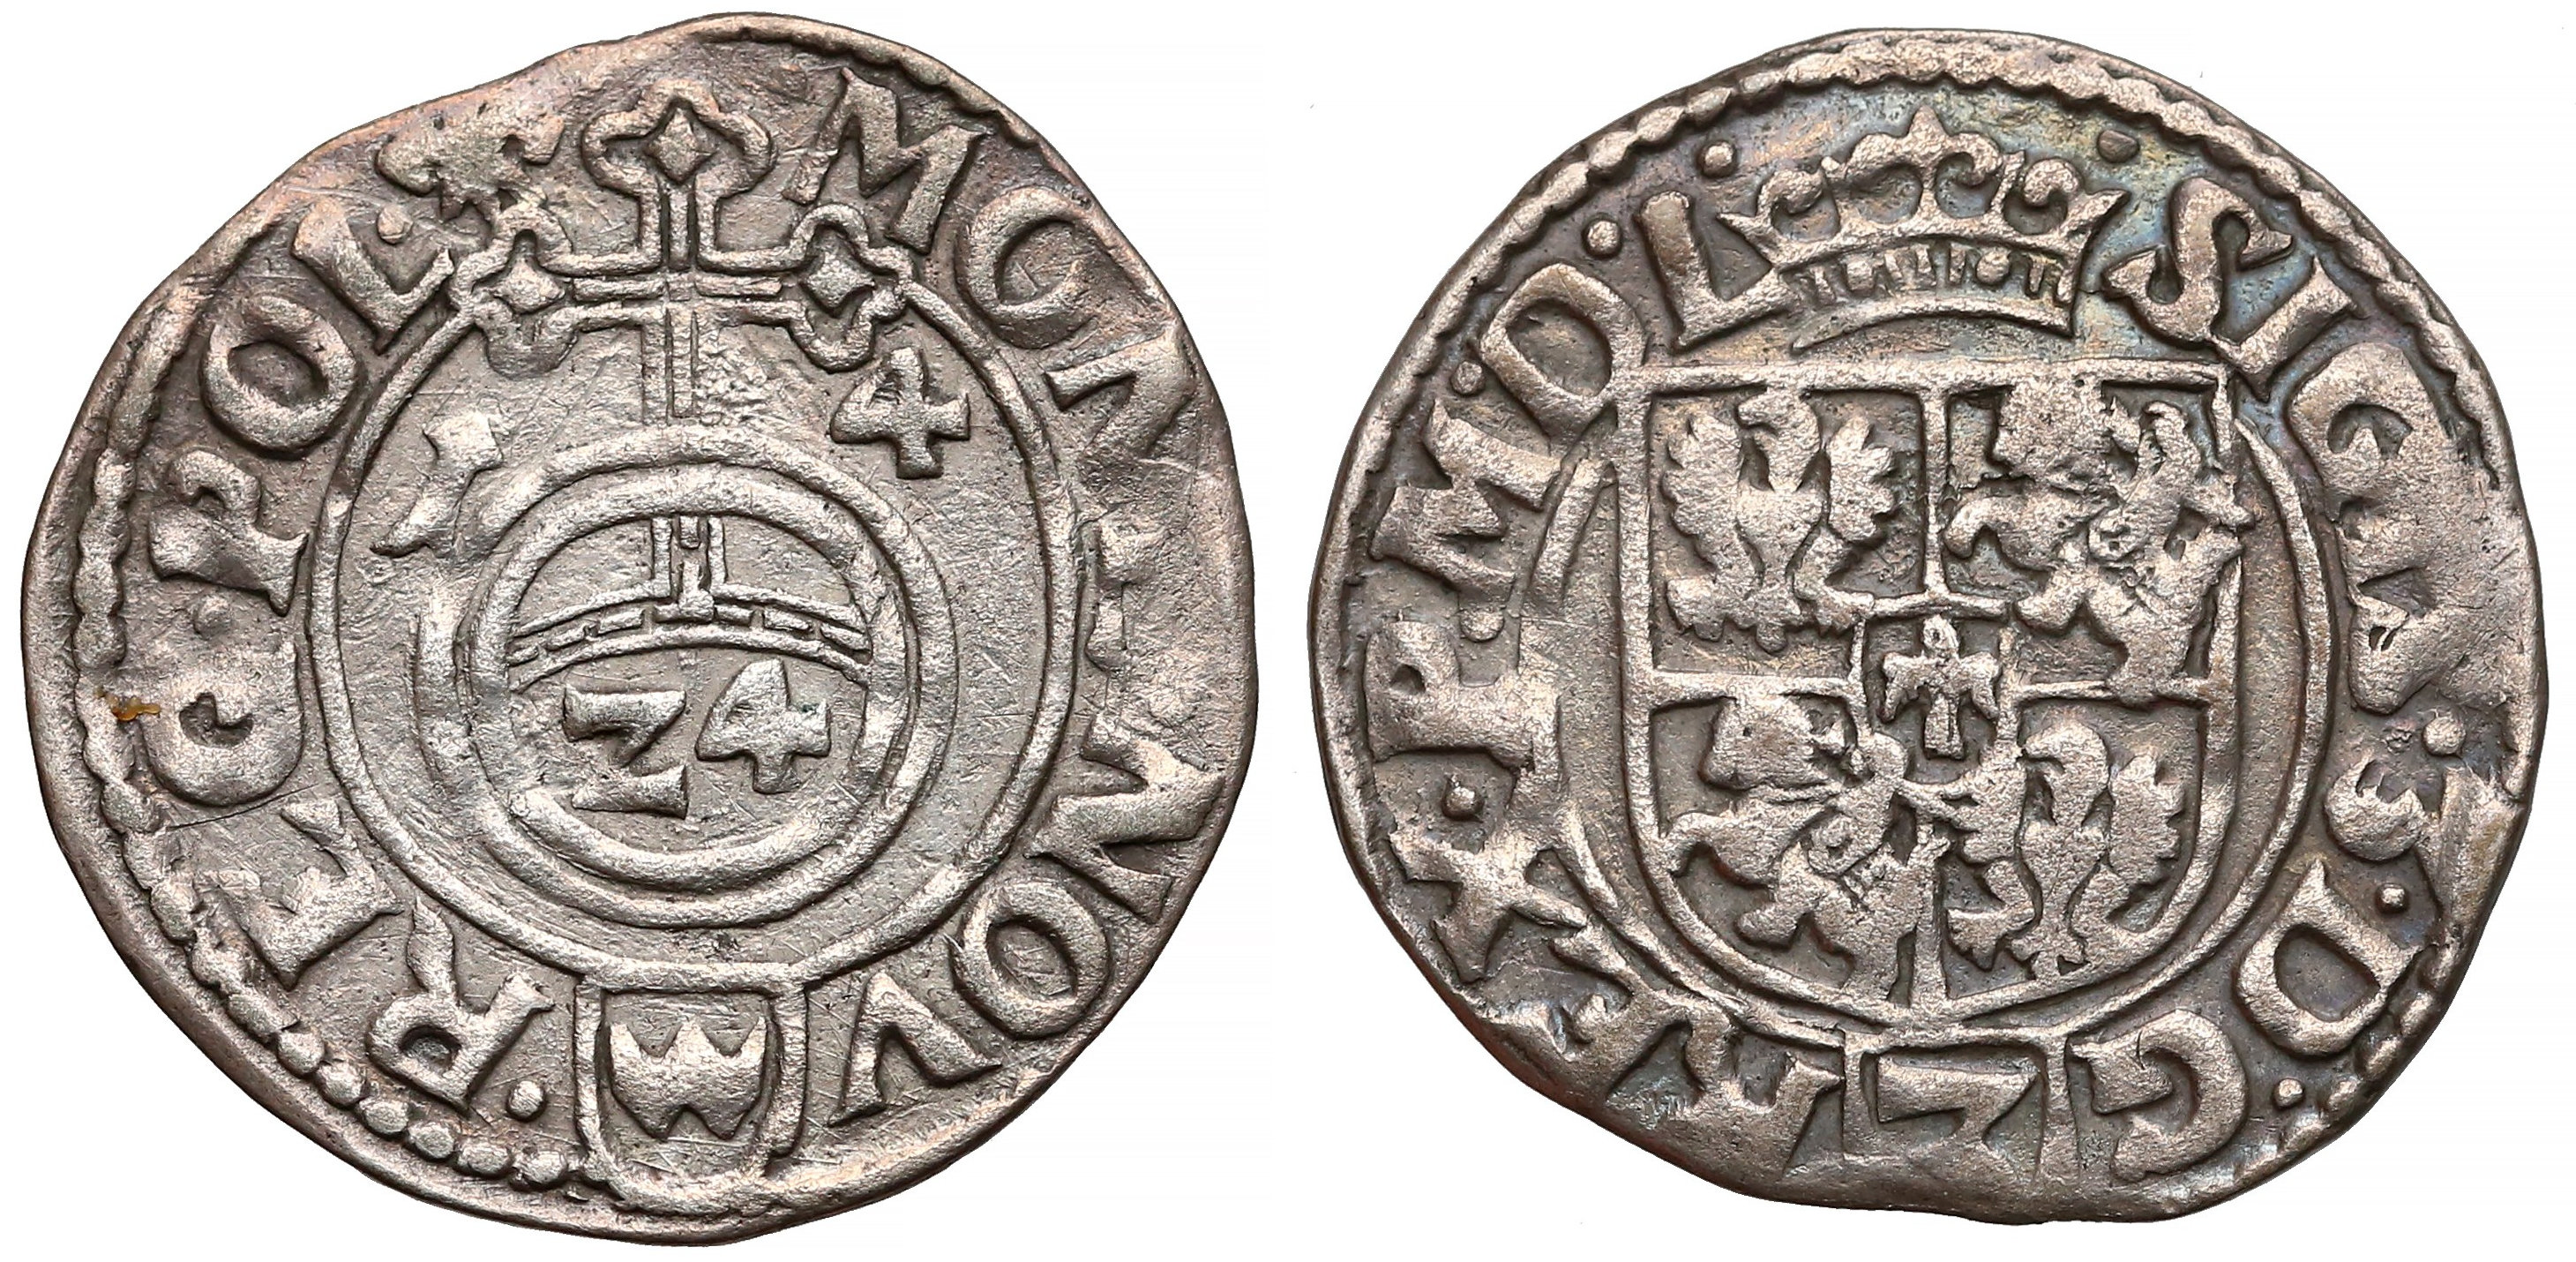 Półtorak koronny (polski) z pocz. XVII wieku, podobną monetę znaleziono na terenie kościoła w Rumi